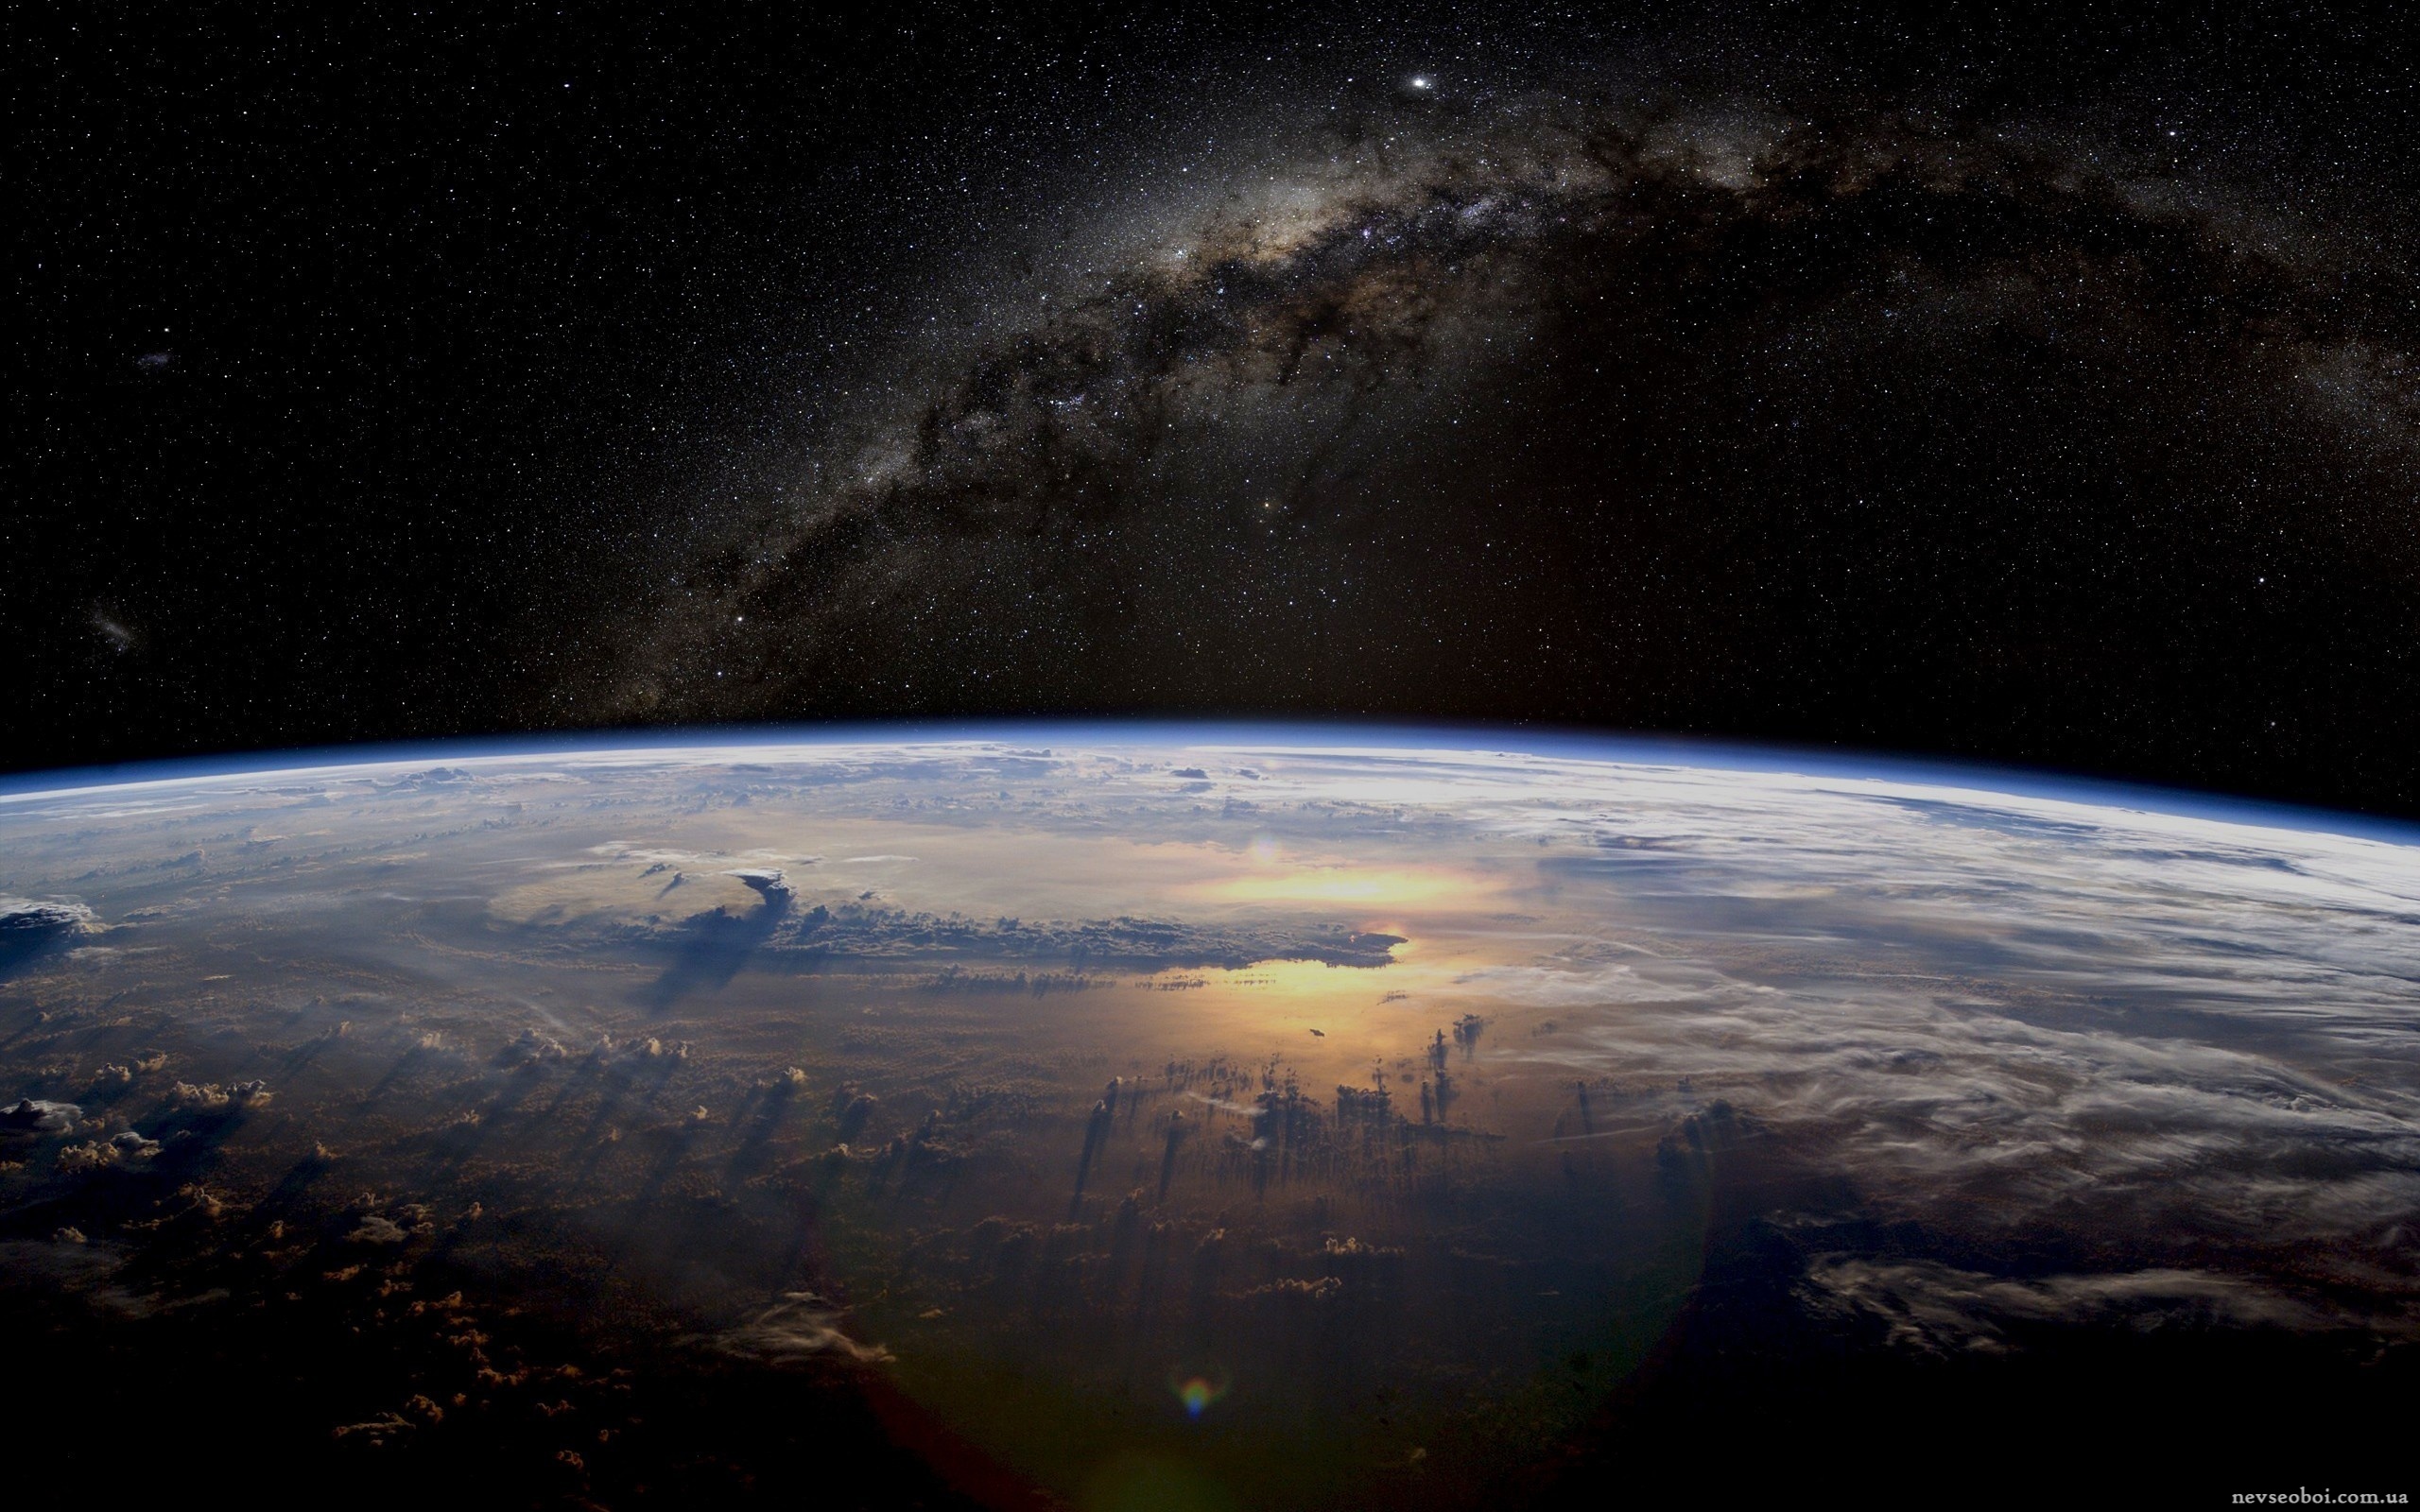 1 му земли. Космос Галактика Млечный путь планеты. Красивый вид земли из космоса. О земле и космосе. Планета из космоса.